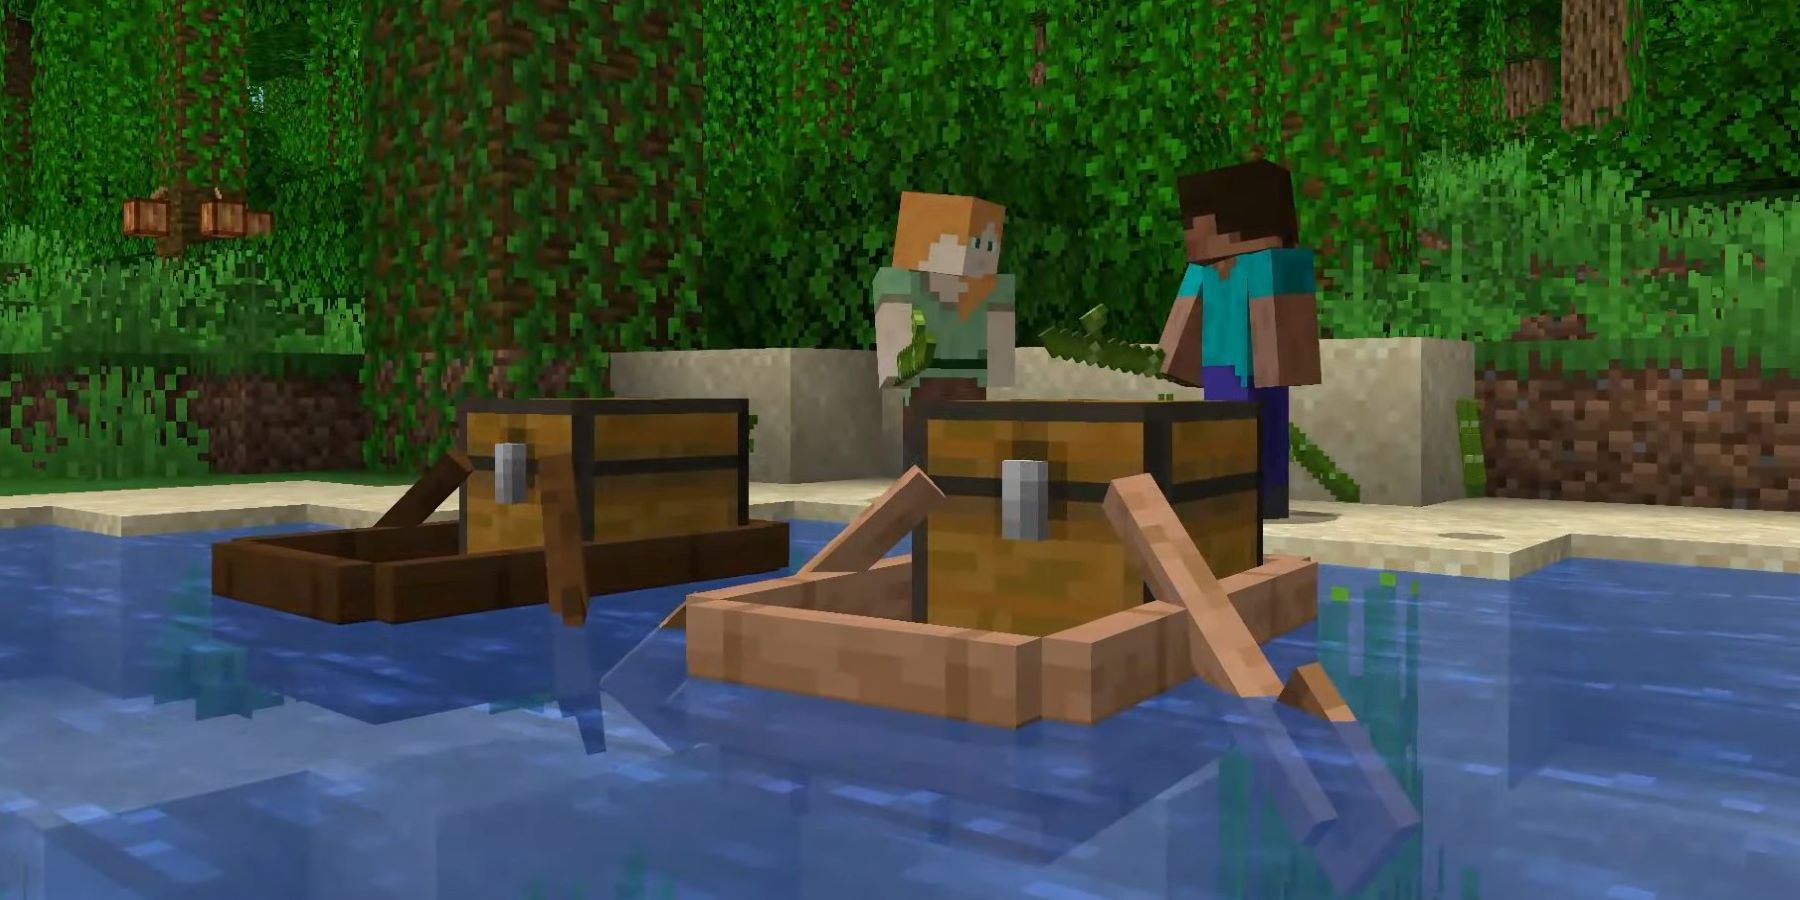 Скриншот лодок с сундуками в обновлении 1.19 Wild для Minecraft со Стивом и Алексом на заднем плане